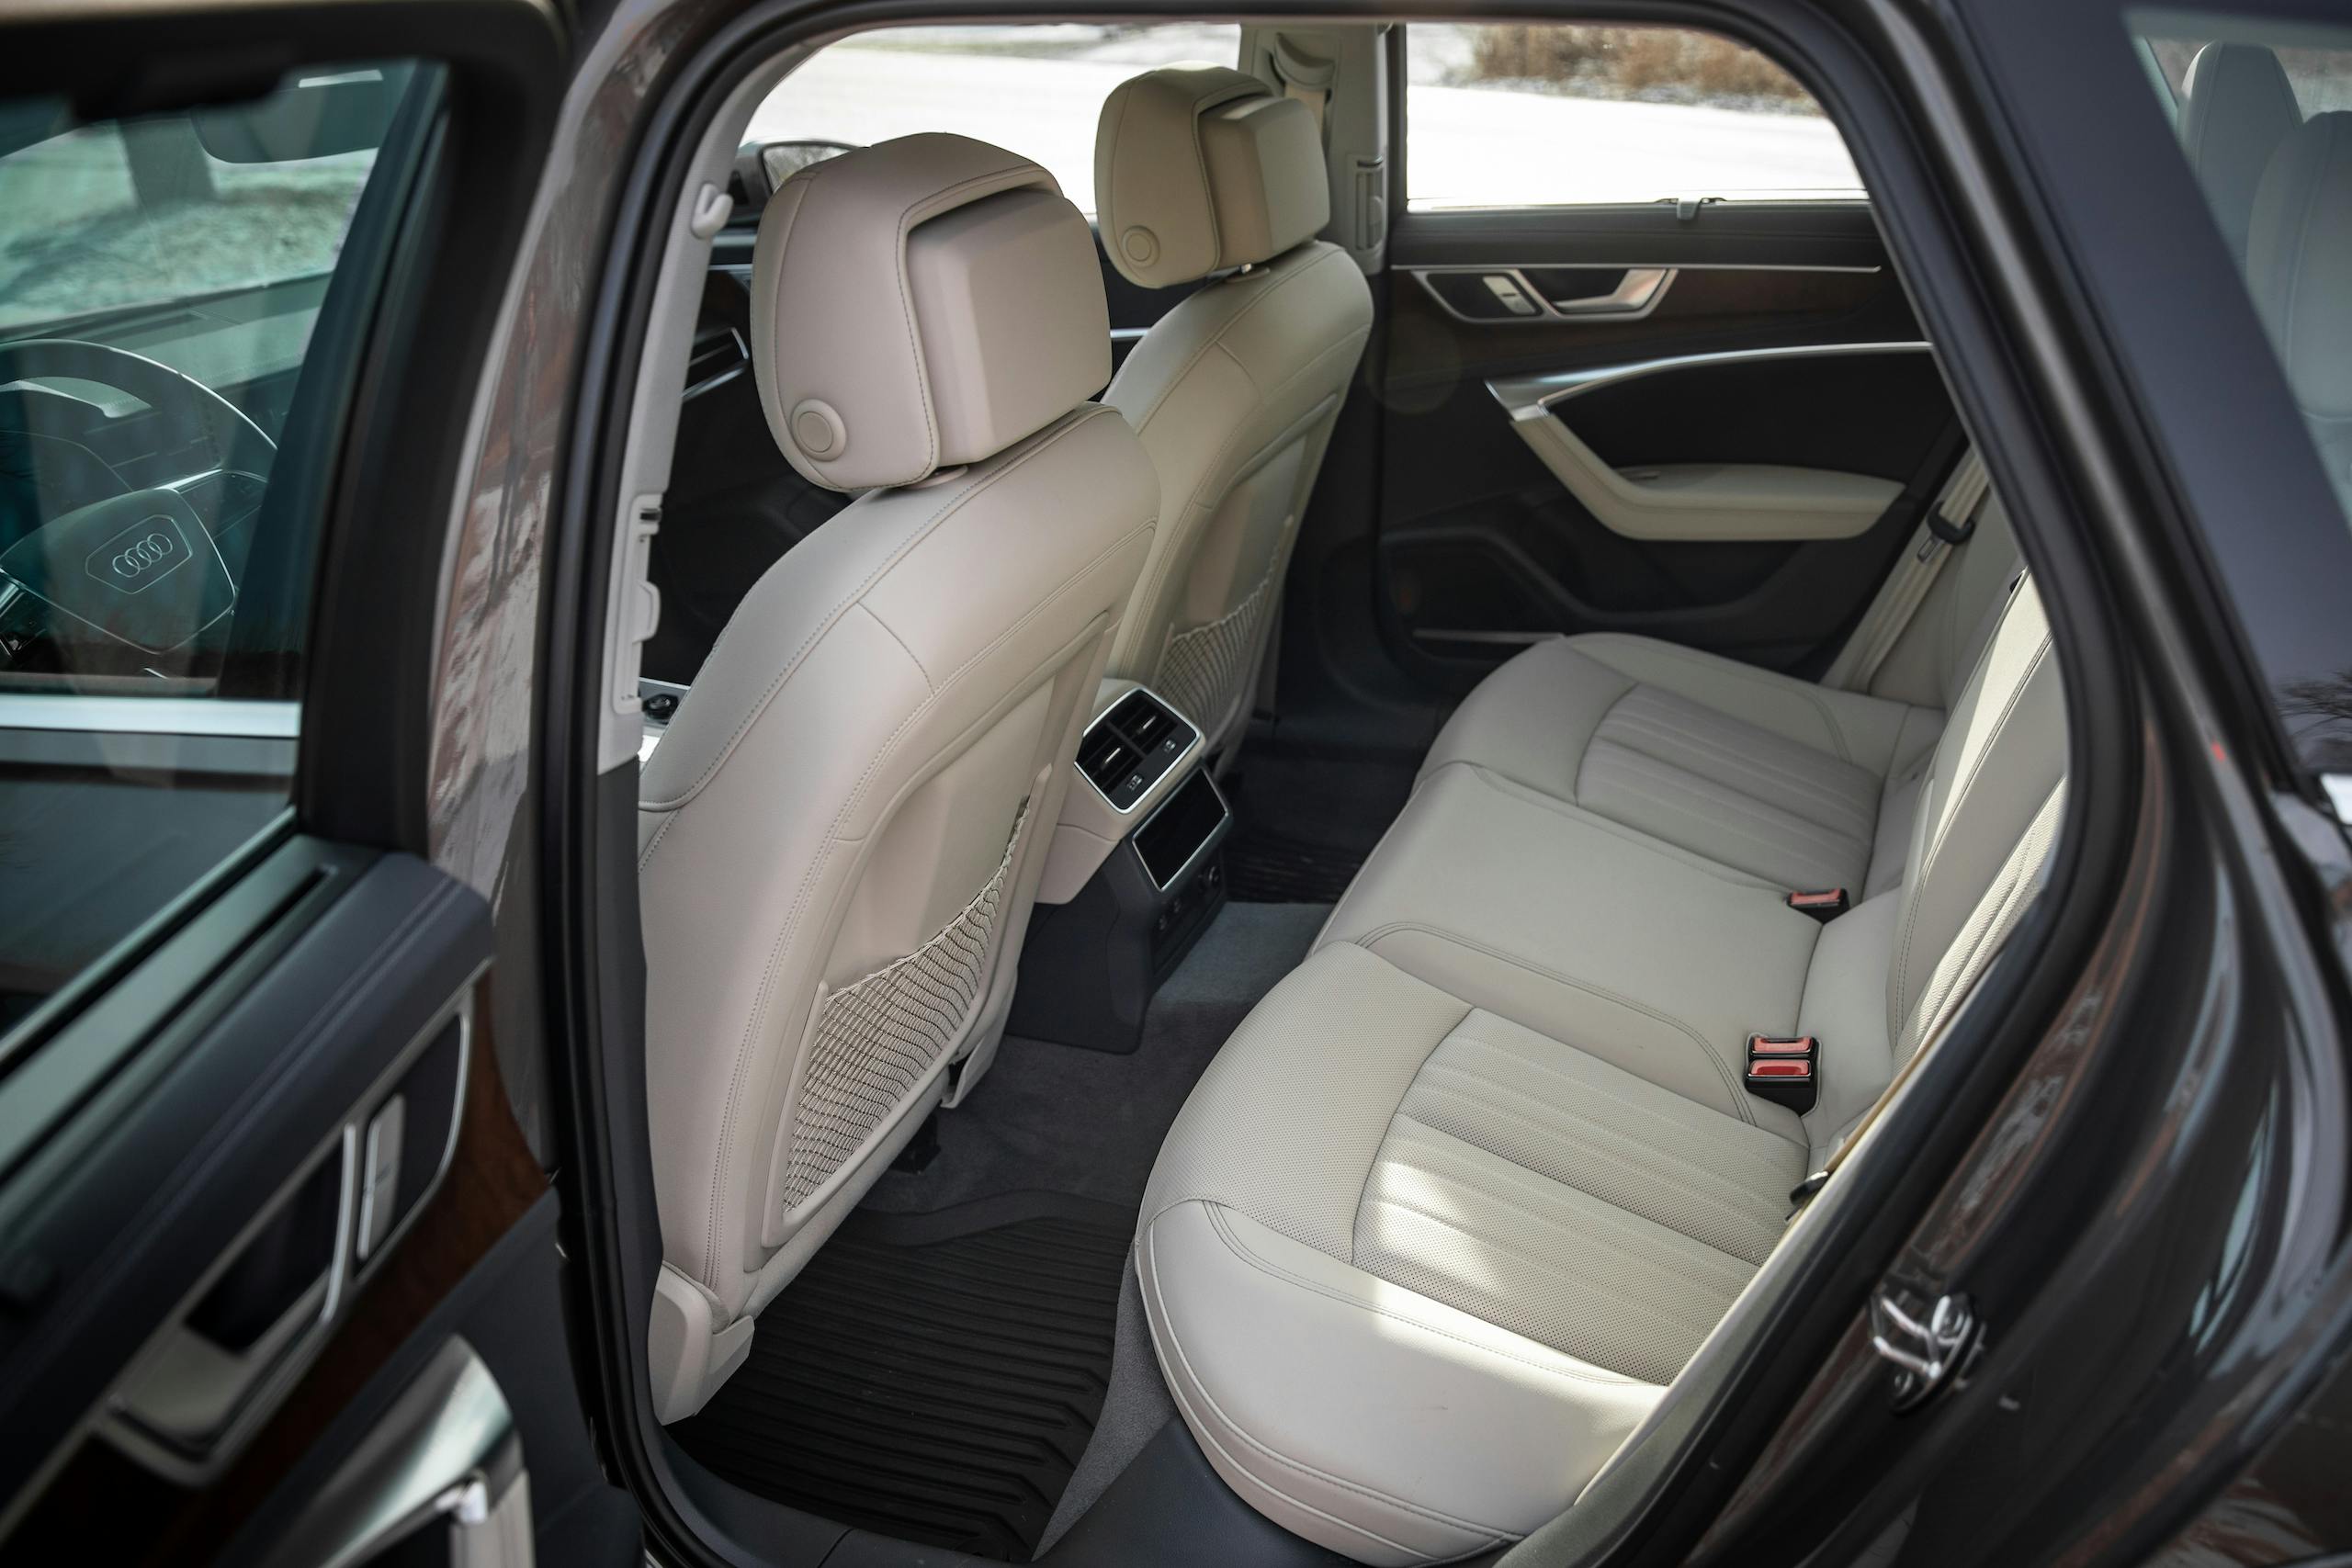 Audi A6 Allroad Quattro Wagon interior rear seat room